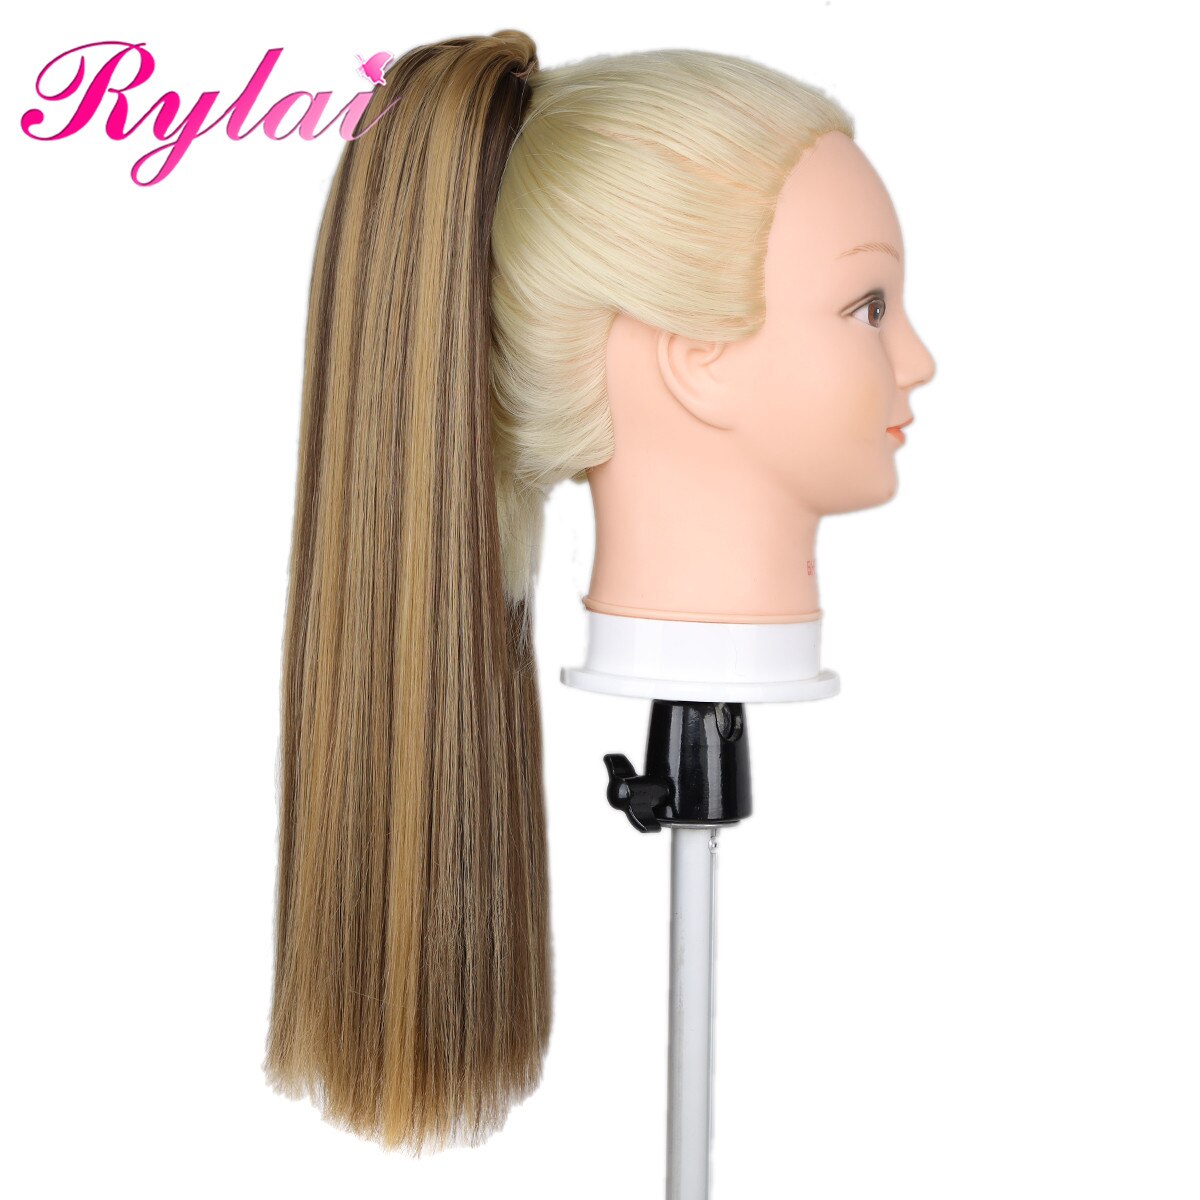 Rechte Paardenstaart Hair Extensions Claw Clip Synthetische Pony Tail Extensions 18 Inches Voor Vrouwen Beautyhair Door Rylai